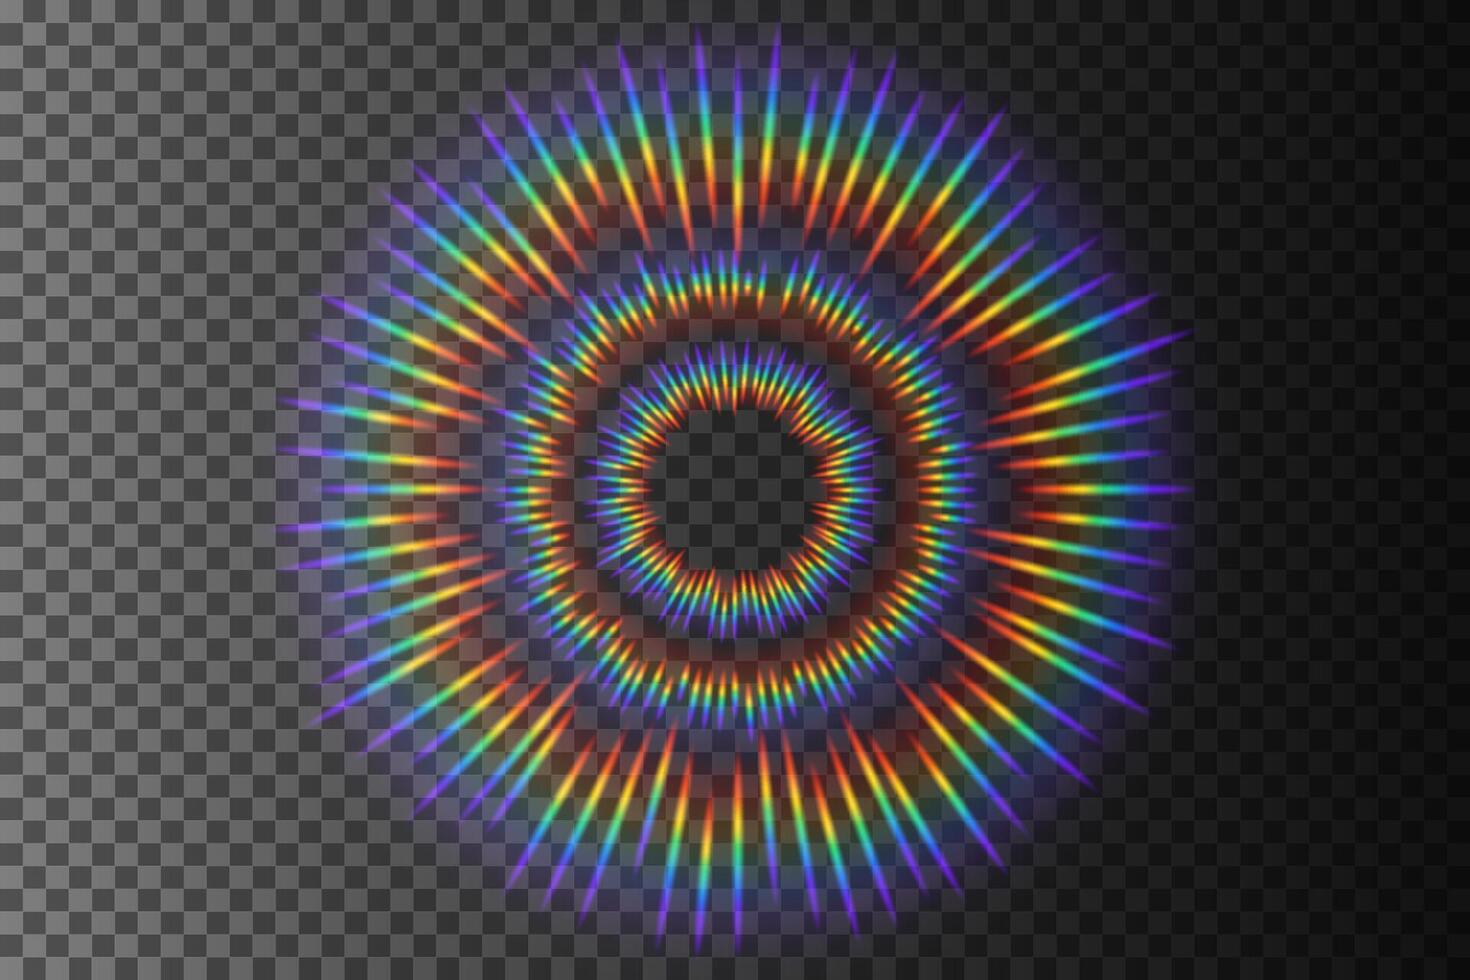 Rainbow Sunlight Effect, Isolated on Pattern, Vector Illustration